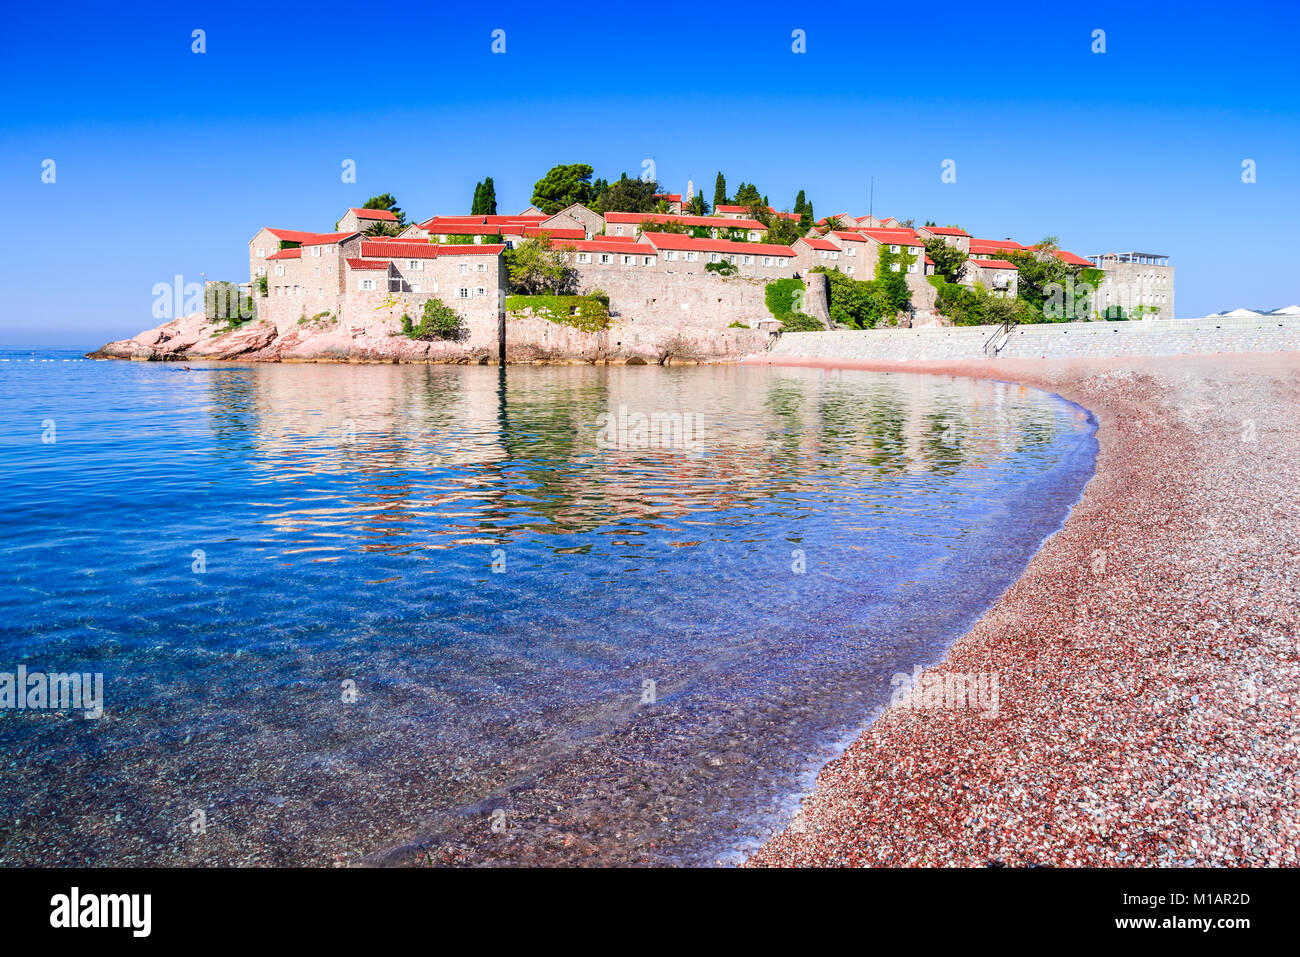 Sveti Stefan, Montenegro. Budva visite turistiche e idilliaco con piccola isola del litorale adriatico. Foto Stock